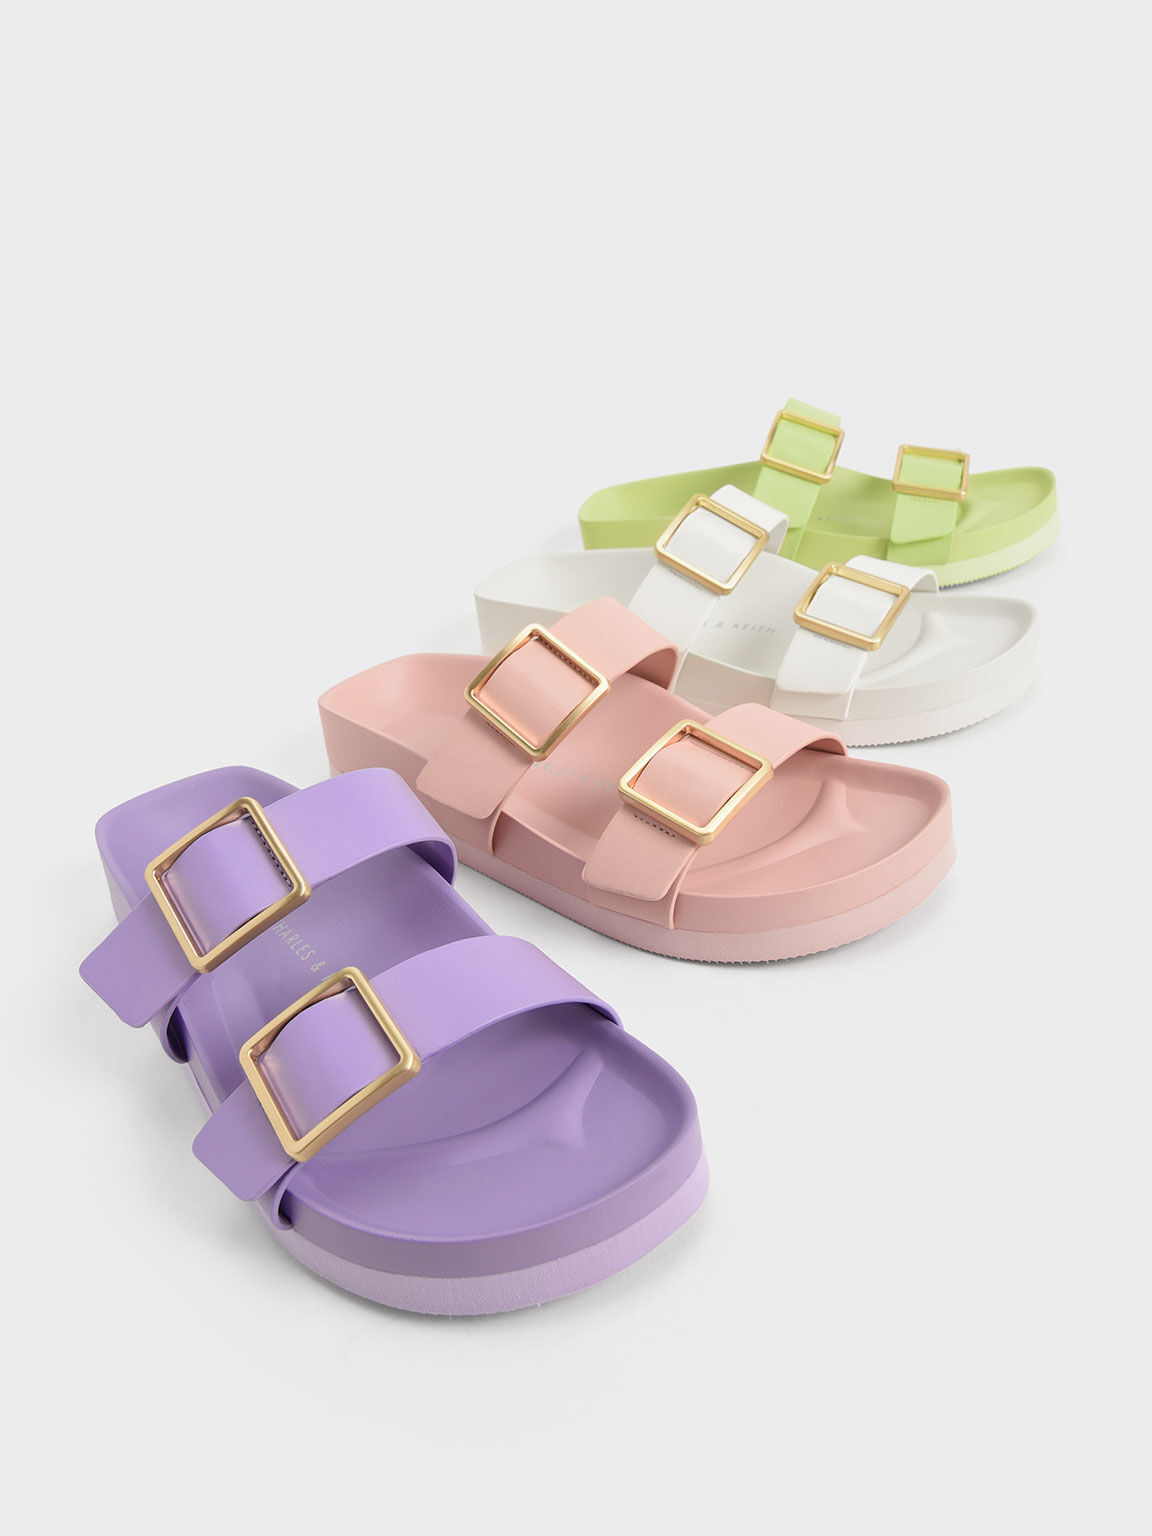 Sandal Slide Metallic Buckle, Light Pink, hi-res